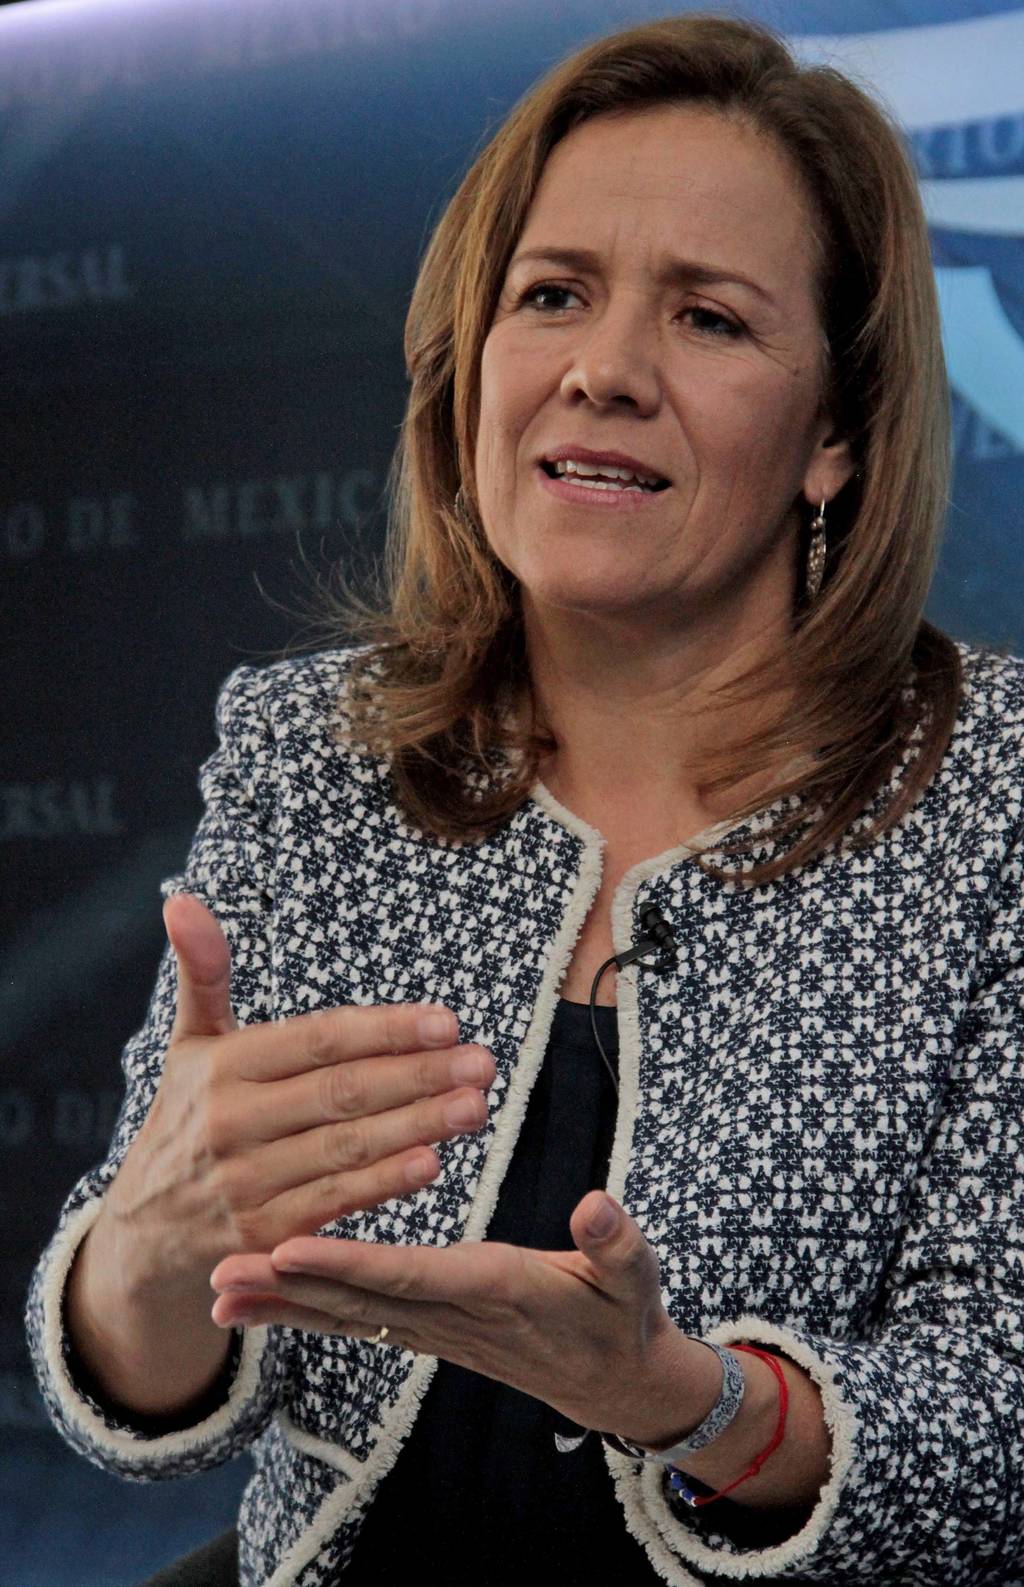 Prioridad. El PAN debe definir a su candidato pronto, señala en entrevista Margarita Zavala, aspirante panista a la candidatura presidencial. 